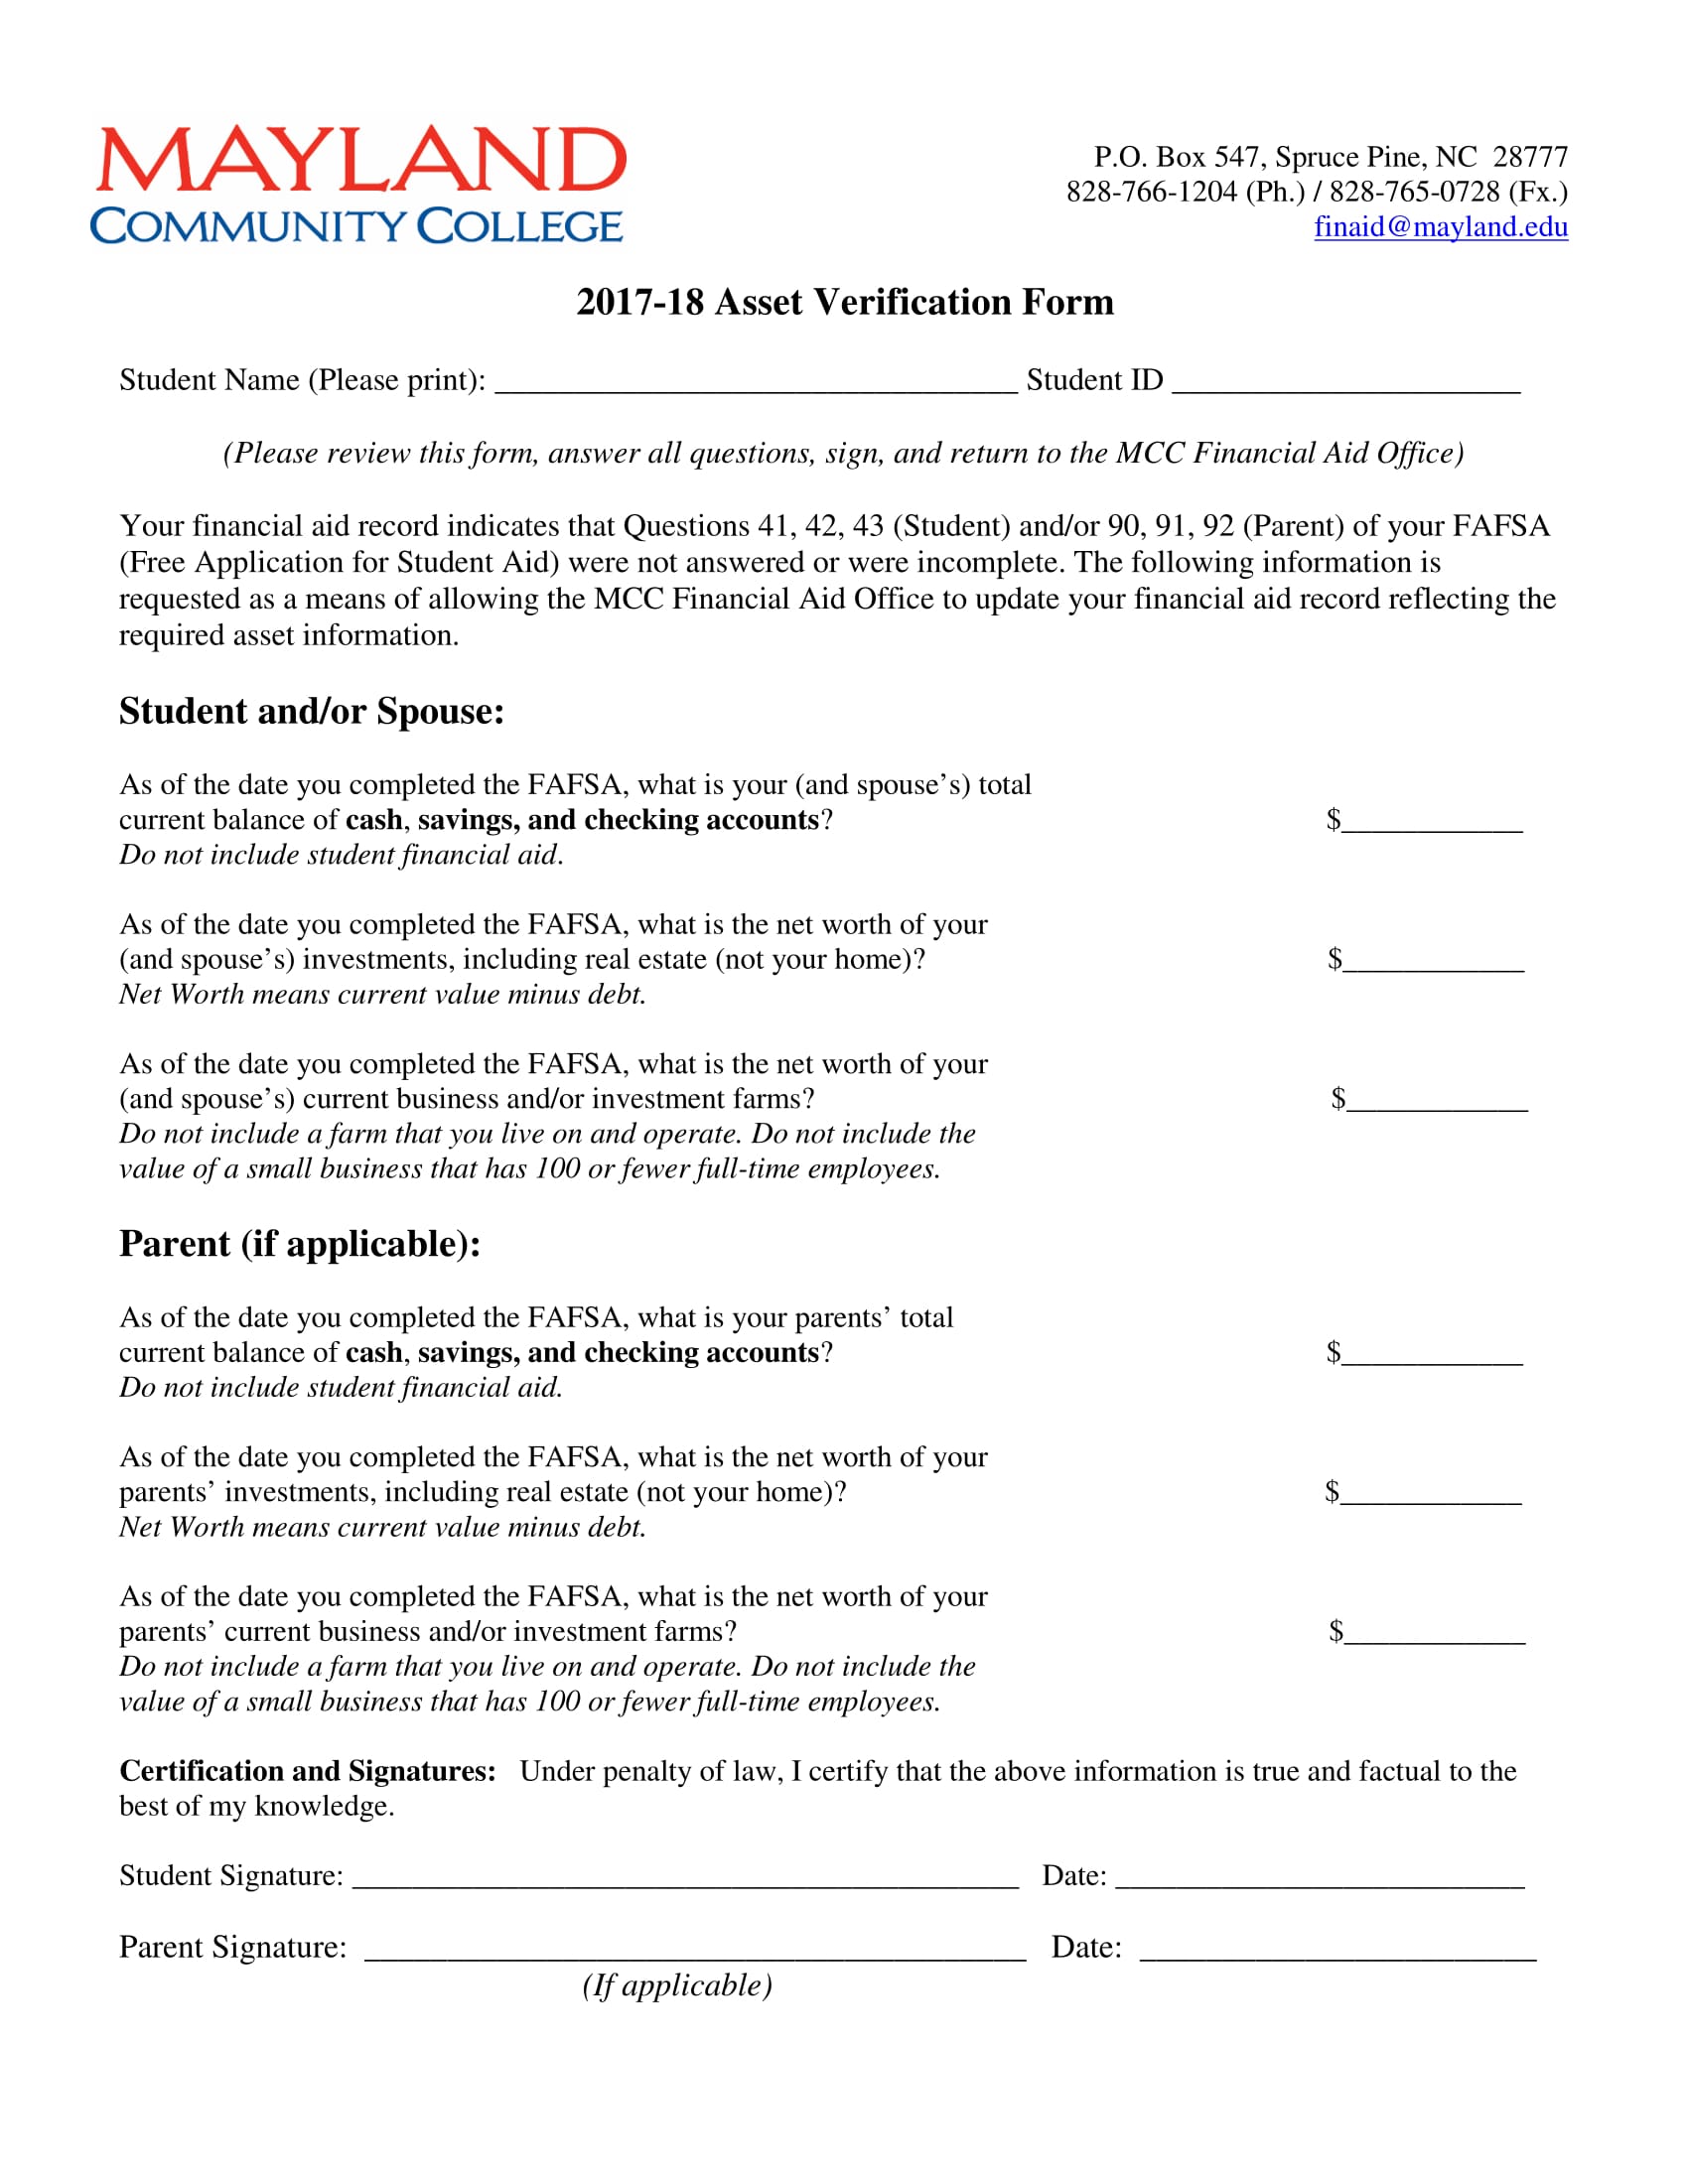 student spouse asset verification form 1